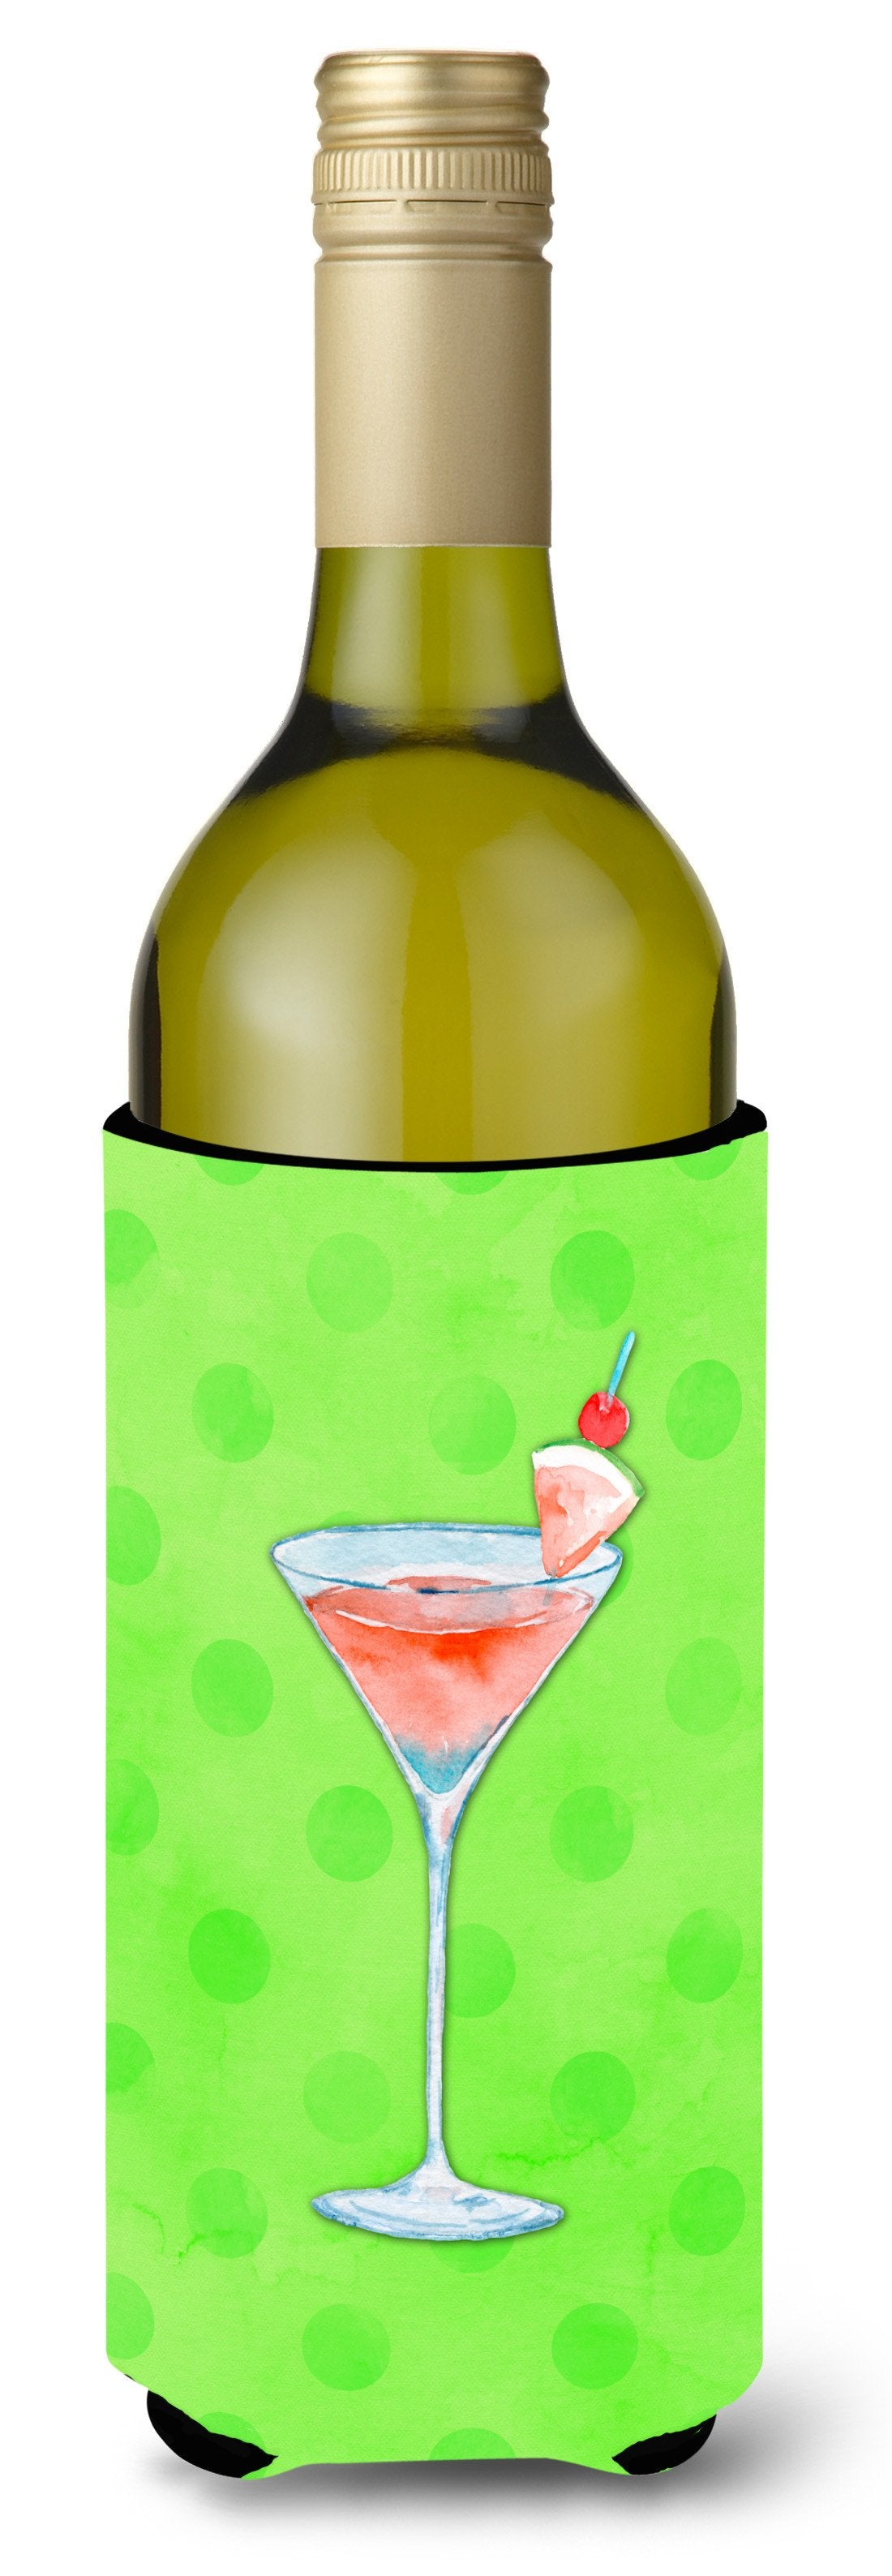 Summer Martini Green Polkadot Wine Bottle Beverge Insulator Hugger BB8215LITERK by Caroline's Treasures